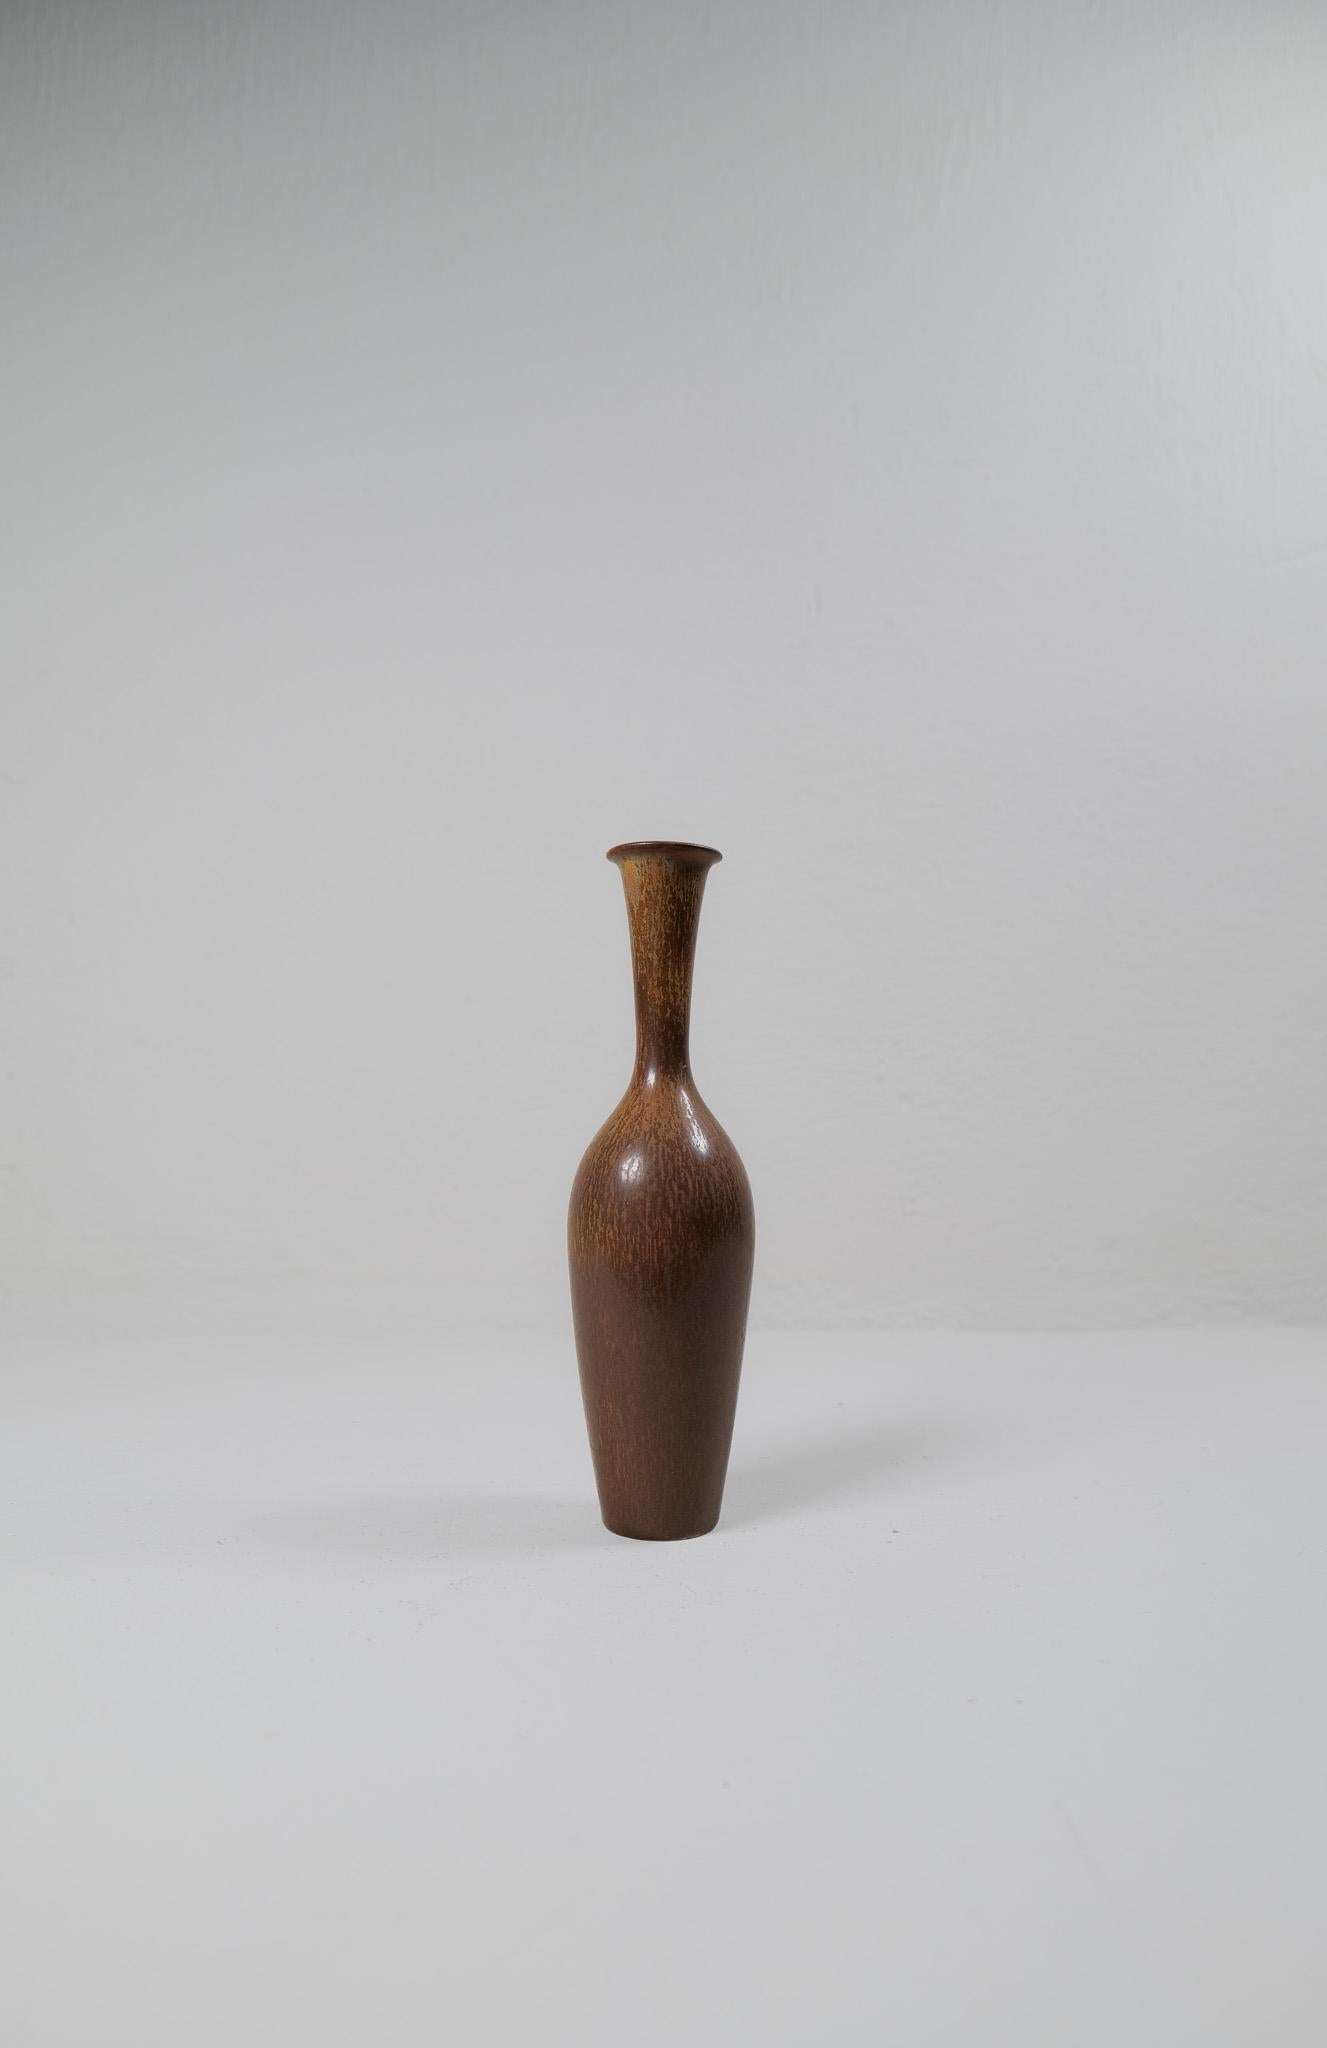 Diese wunderschöne große Vase wurde von Gunnar Nylund in der Rörstrand-Fabrik in den 1950er Jahren in Schweden entworfen und hergestellt. 

Die Glasur ist erstaunlich und passt wunderbar zu der flaschenhalsförmigen Vasenform. 

Sehr guter Zustand.